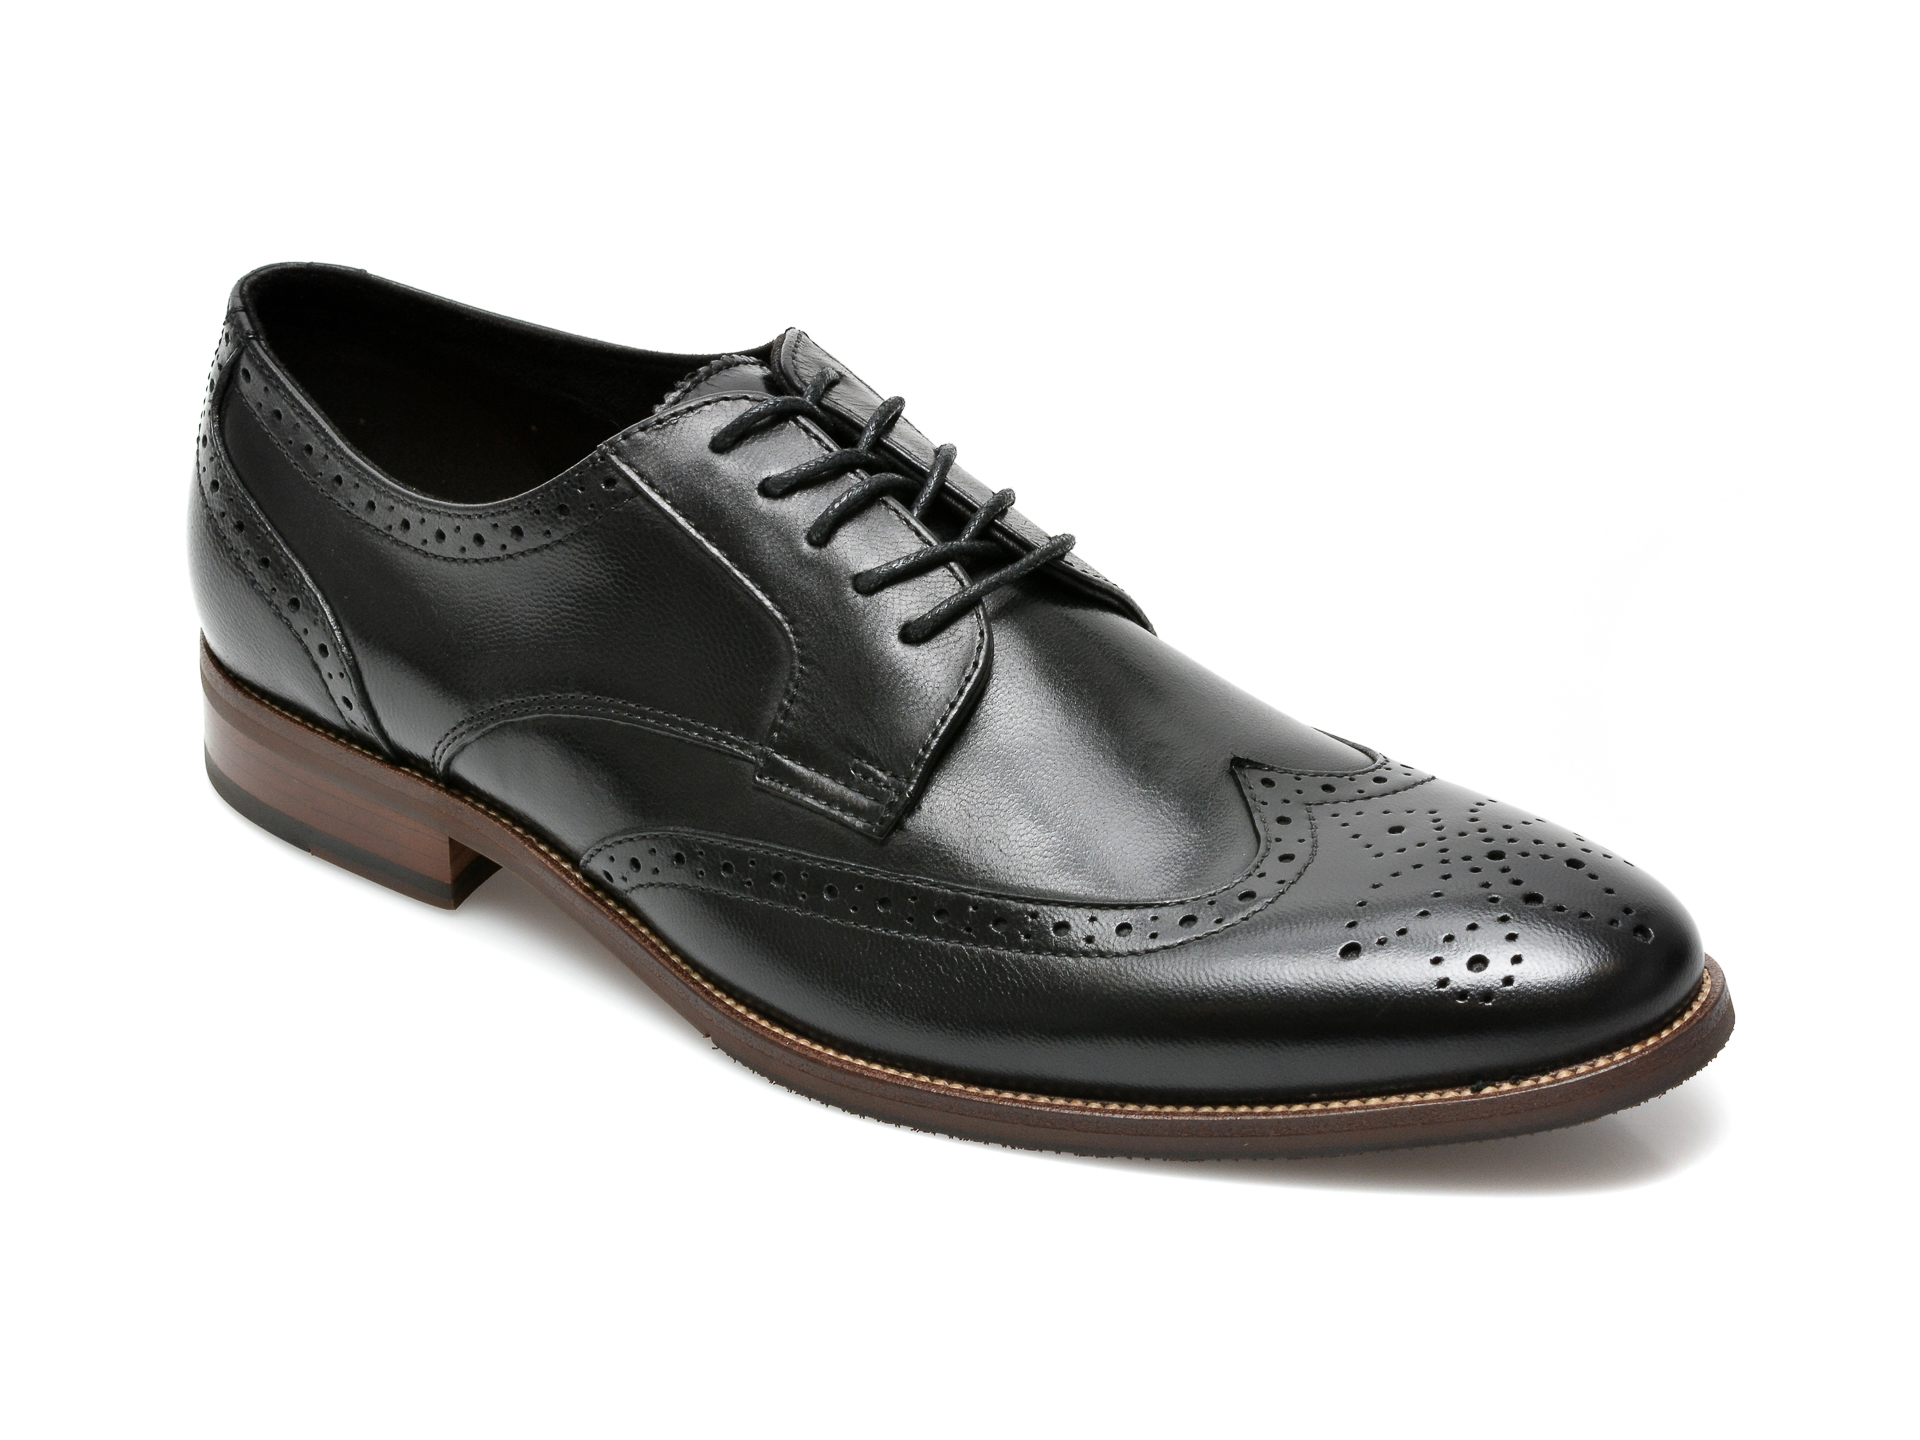 Pantofi ALDO negri, Larethienflex001, din piele naturala Aldo